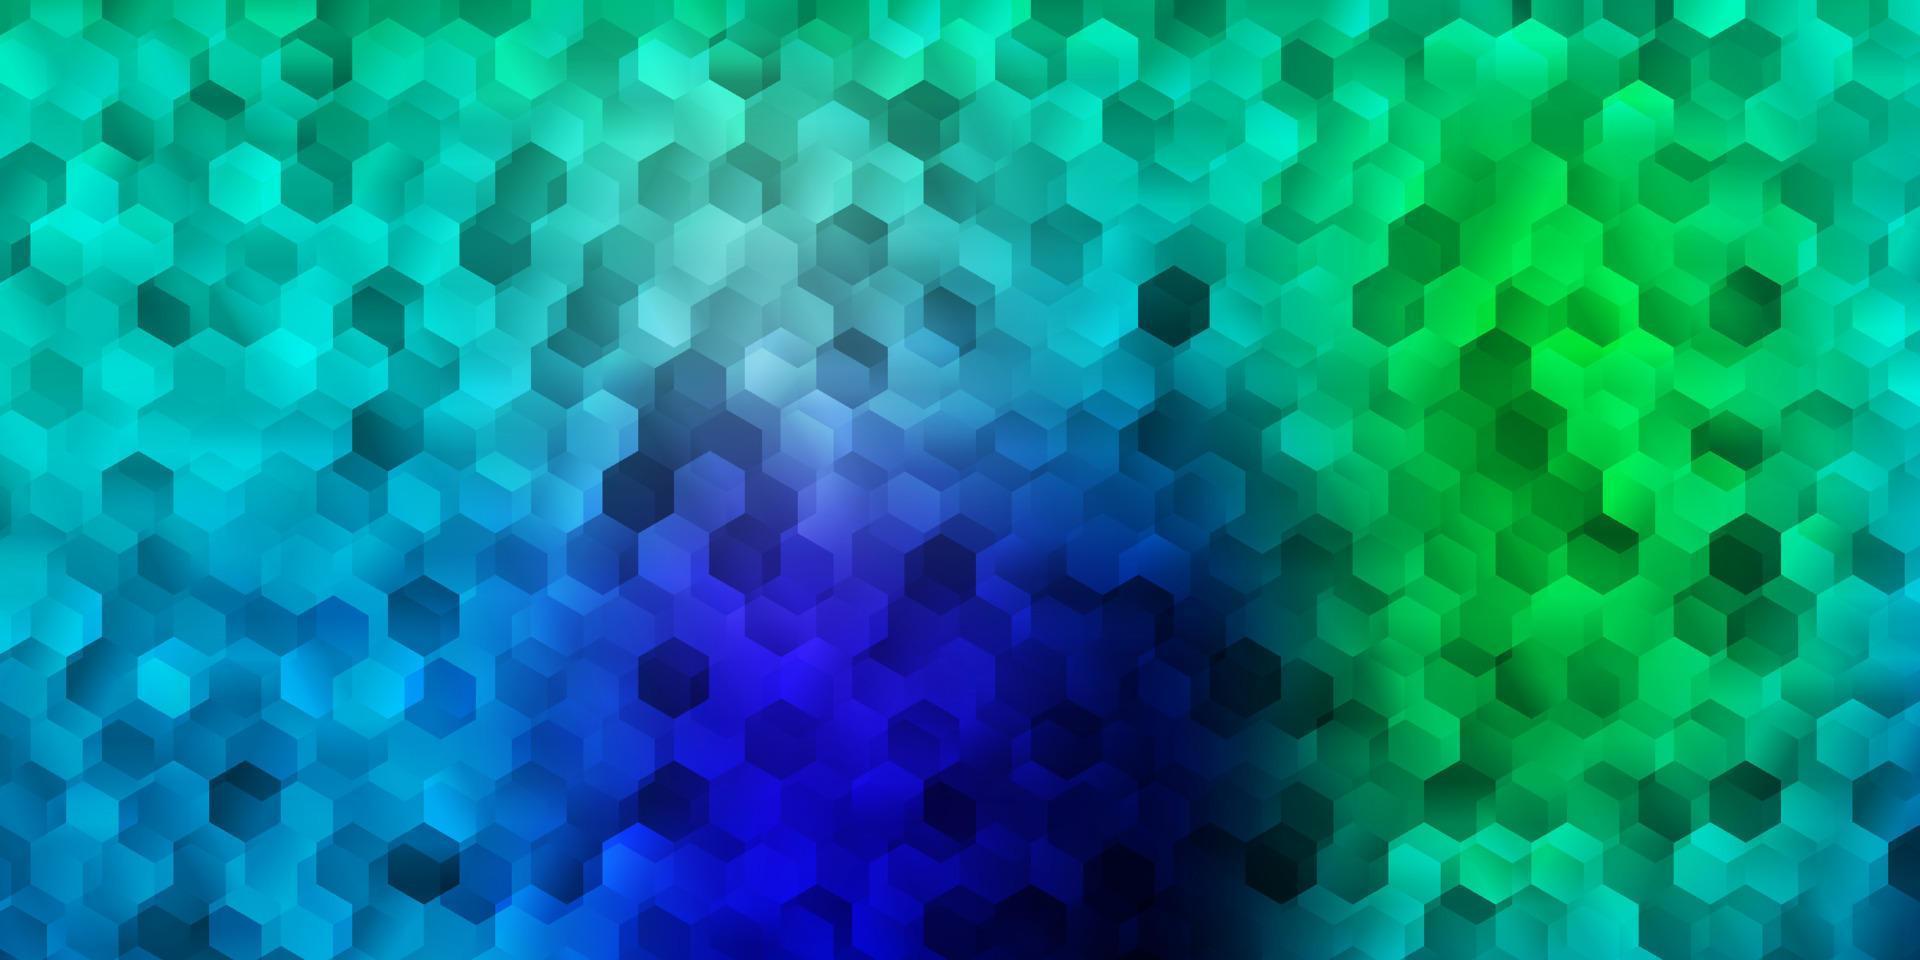 texture de vecteur bleu clair, vert avec des hexagones colorés.